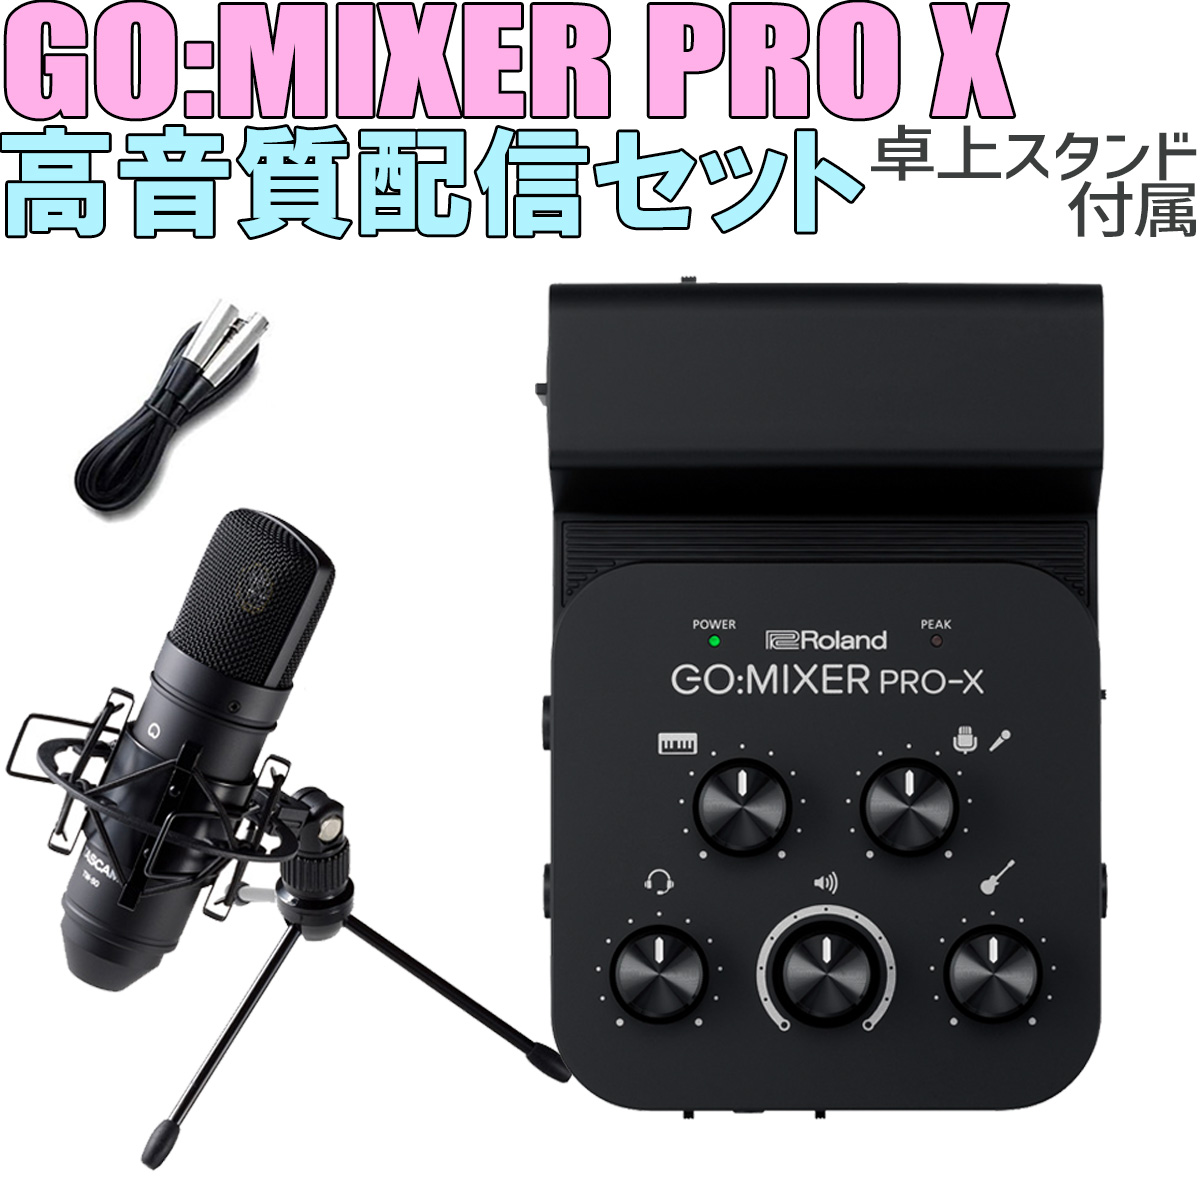 Roland GO:MIXER PRO-X | 配信にも最適なモバイル・デバイス専用 